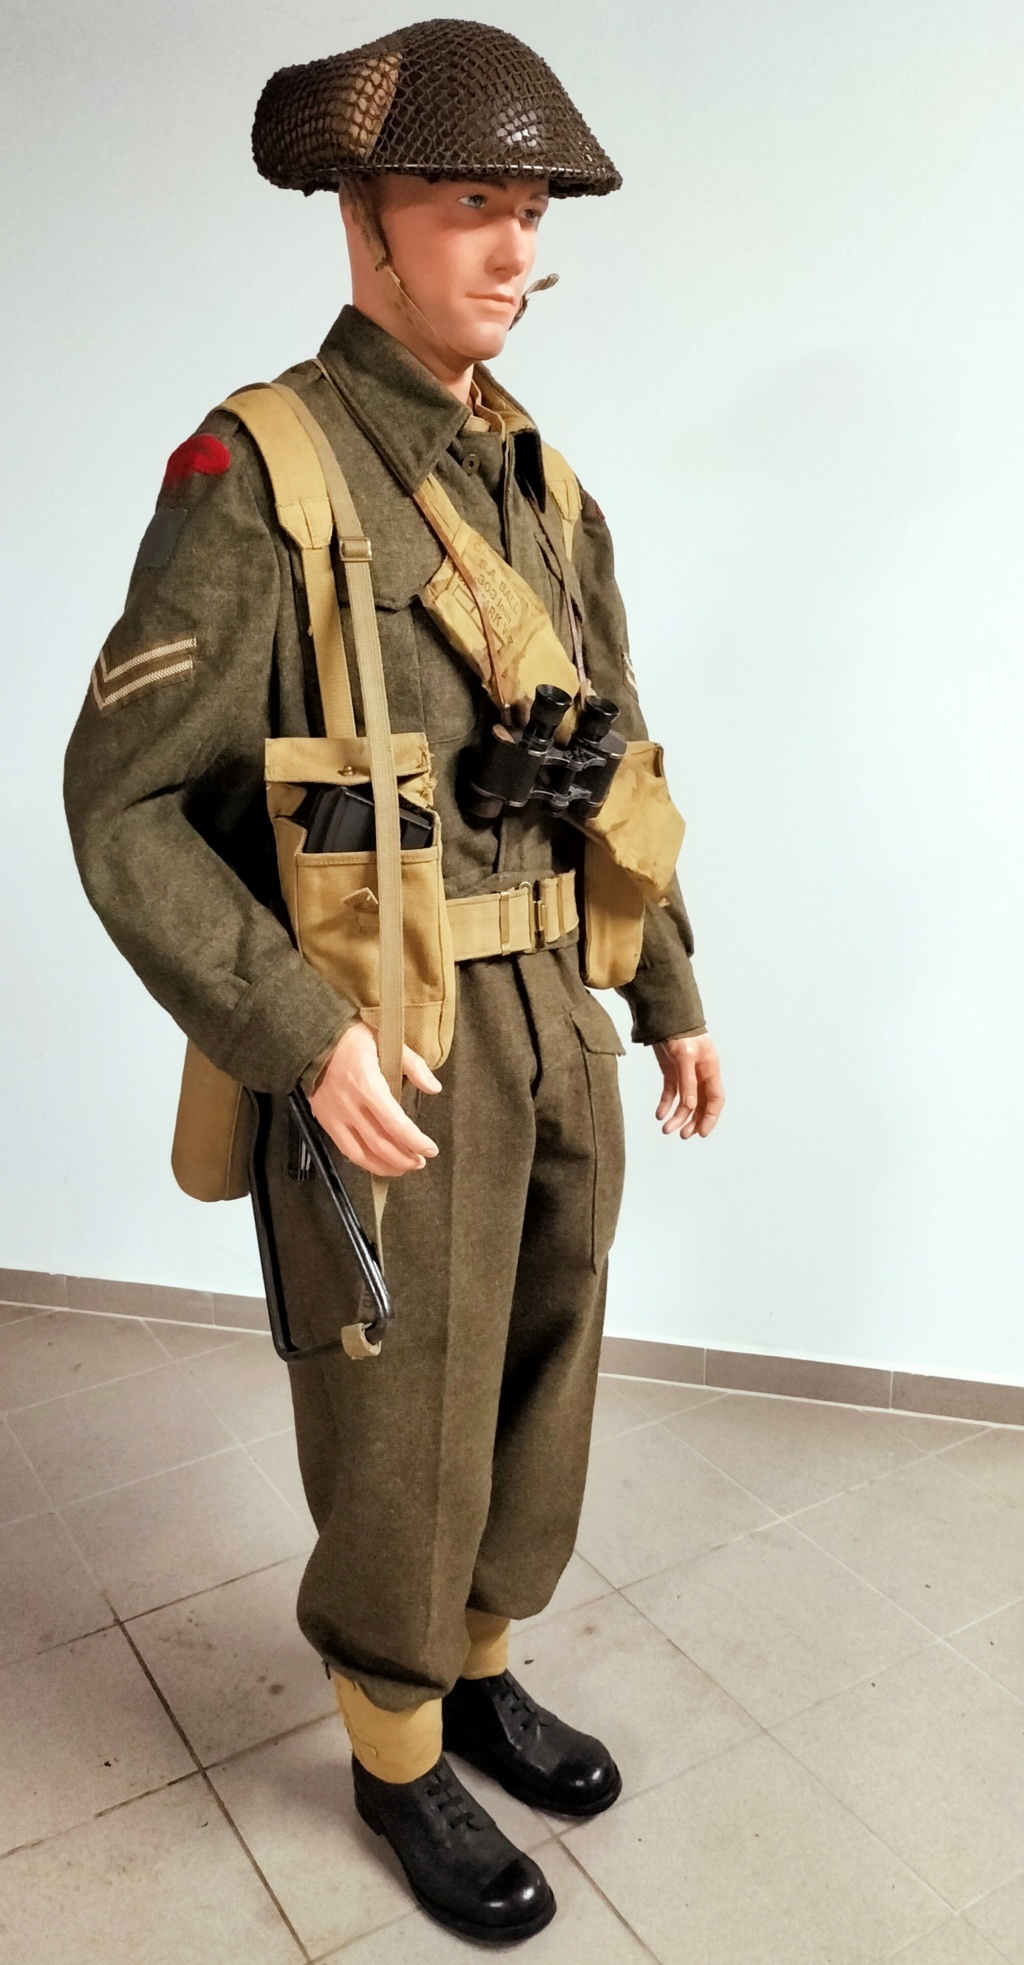 Mannequin de la 3e DI canadienne (Regina Rifle Regiment), bataille de Normandie  - Page 2 Img20288